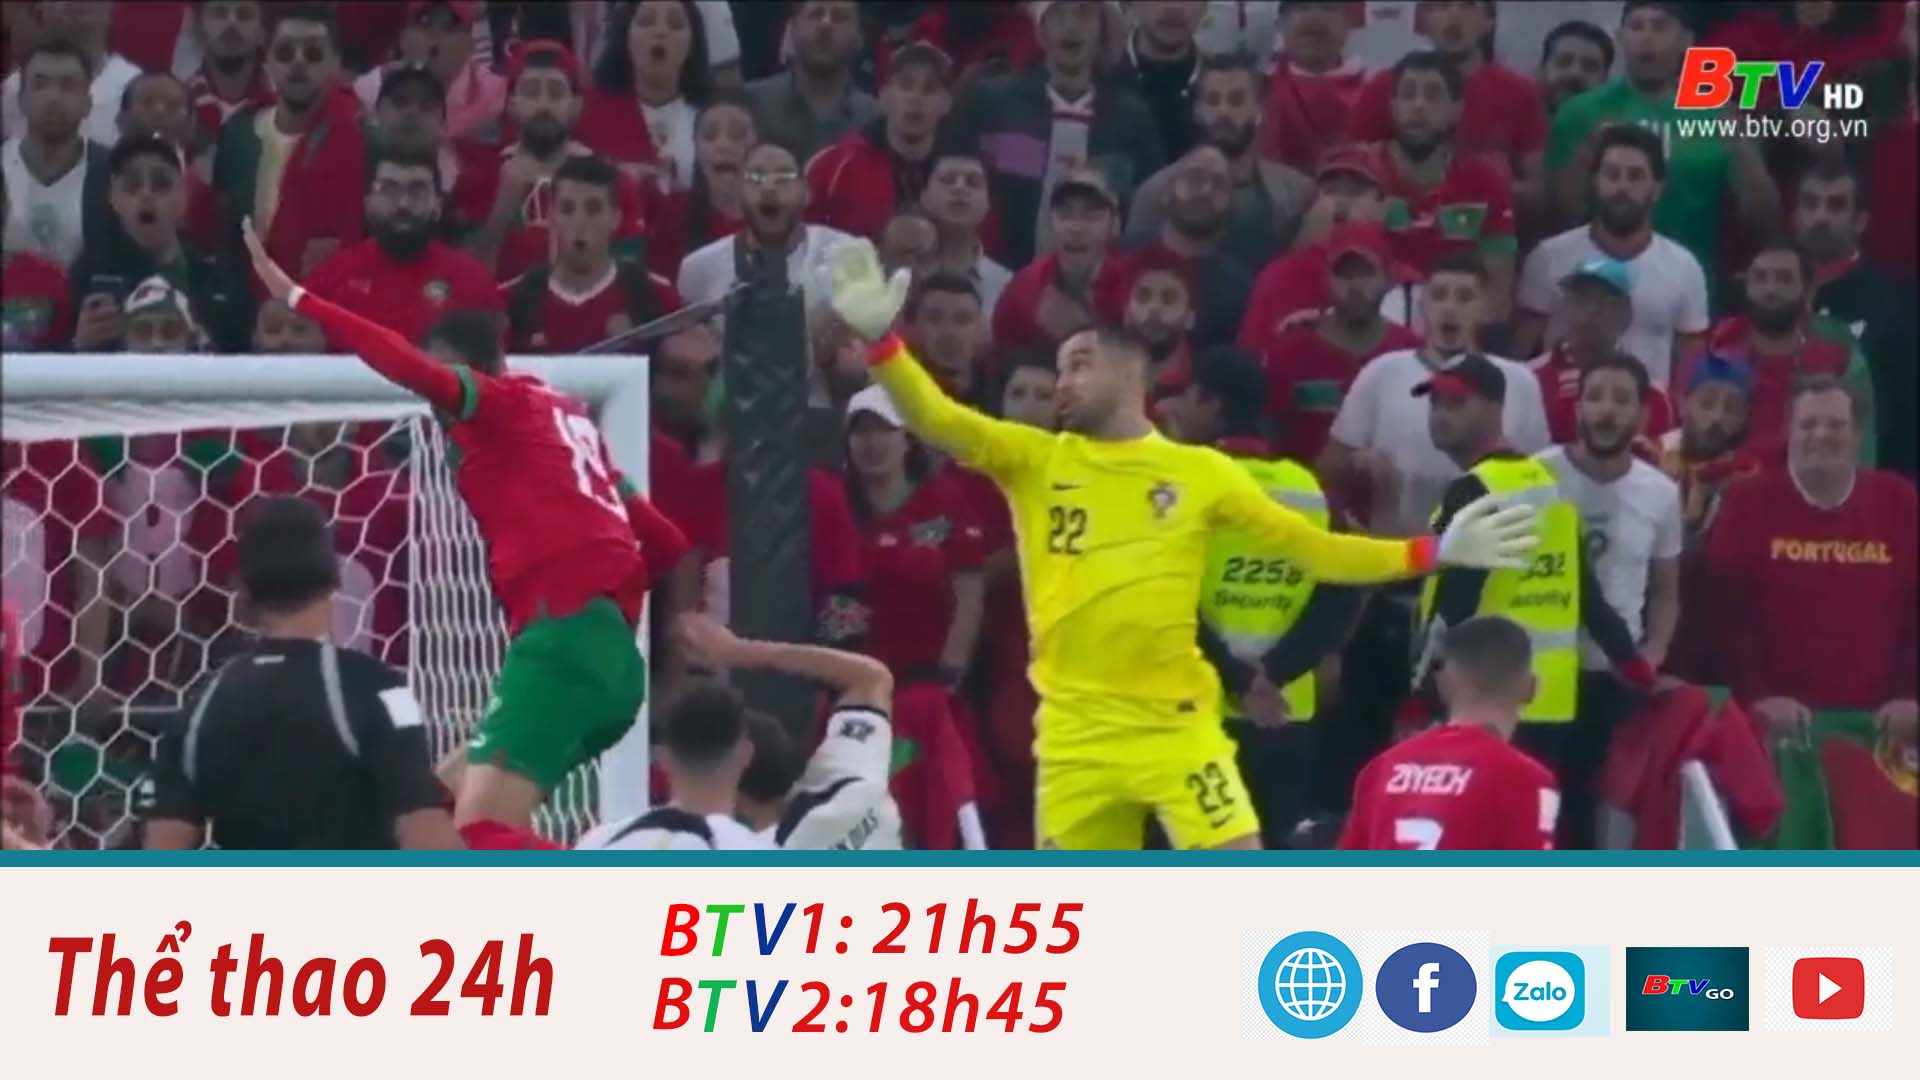 Marocco và giấc mơ chung kết World Cup